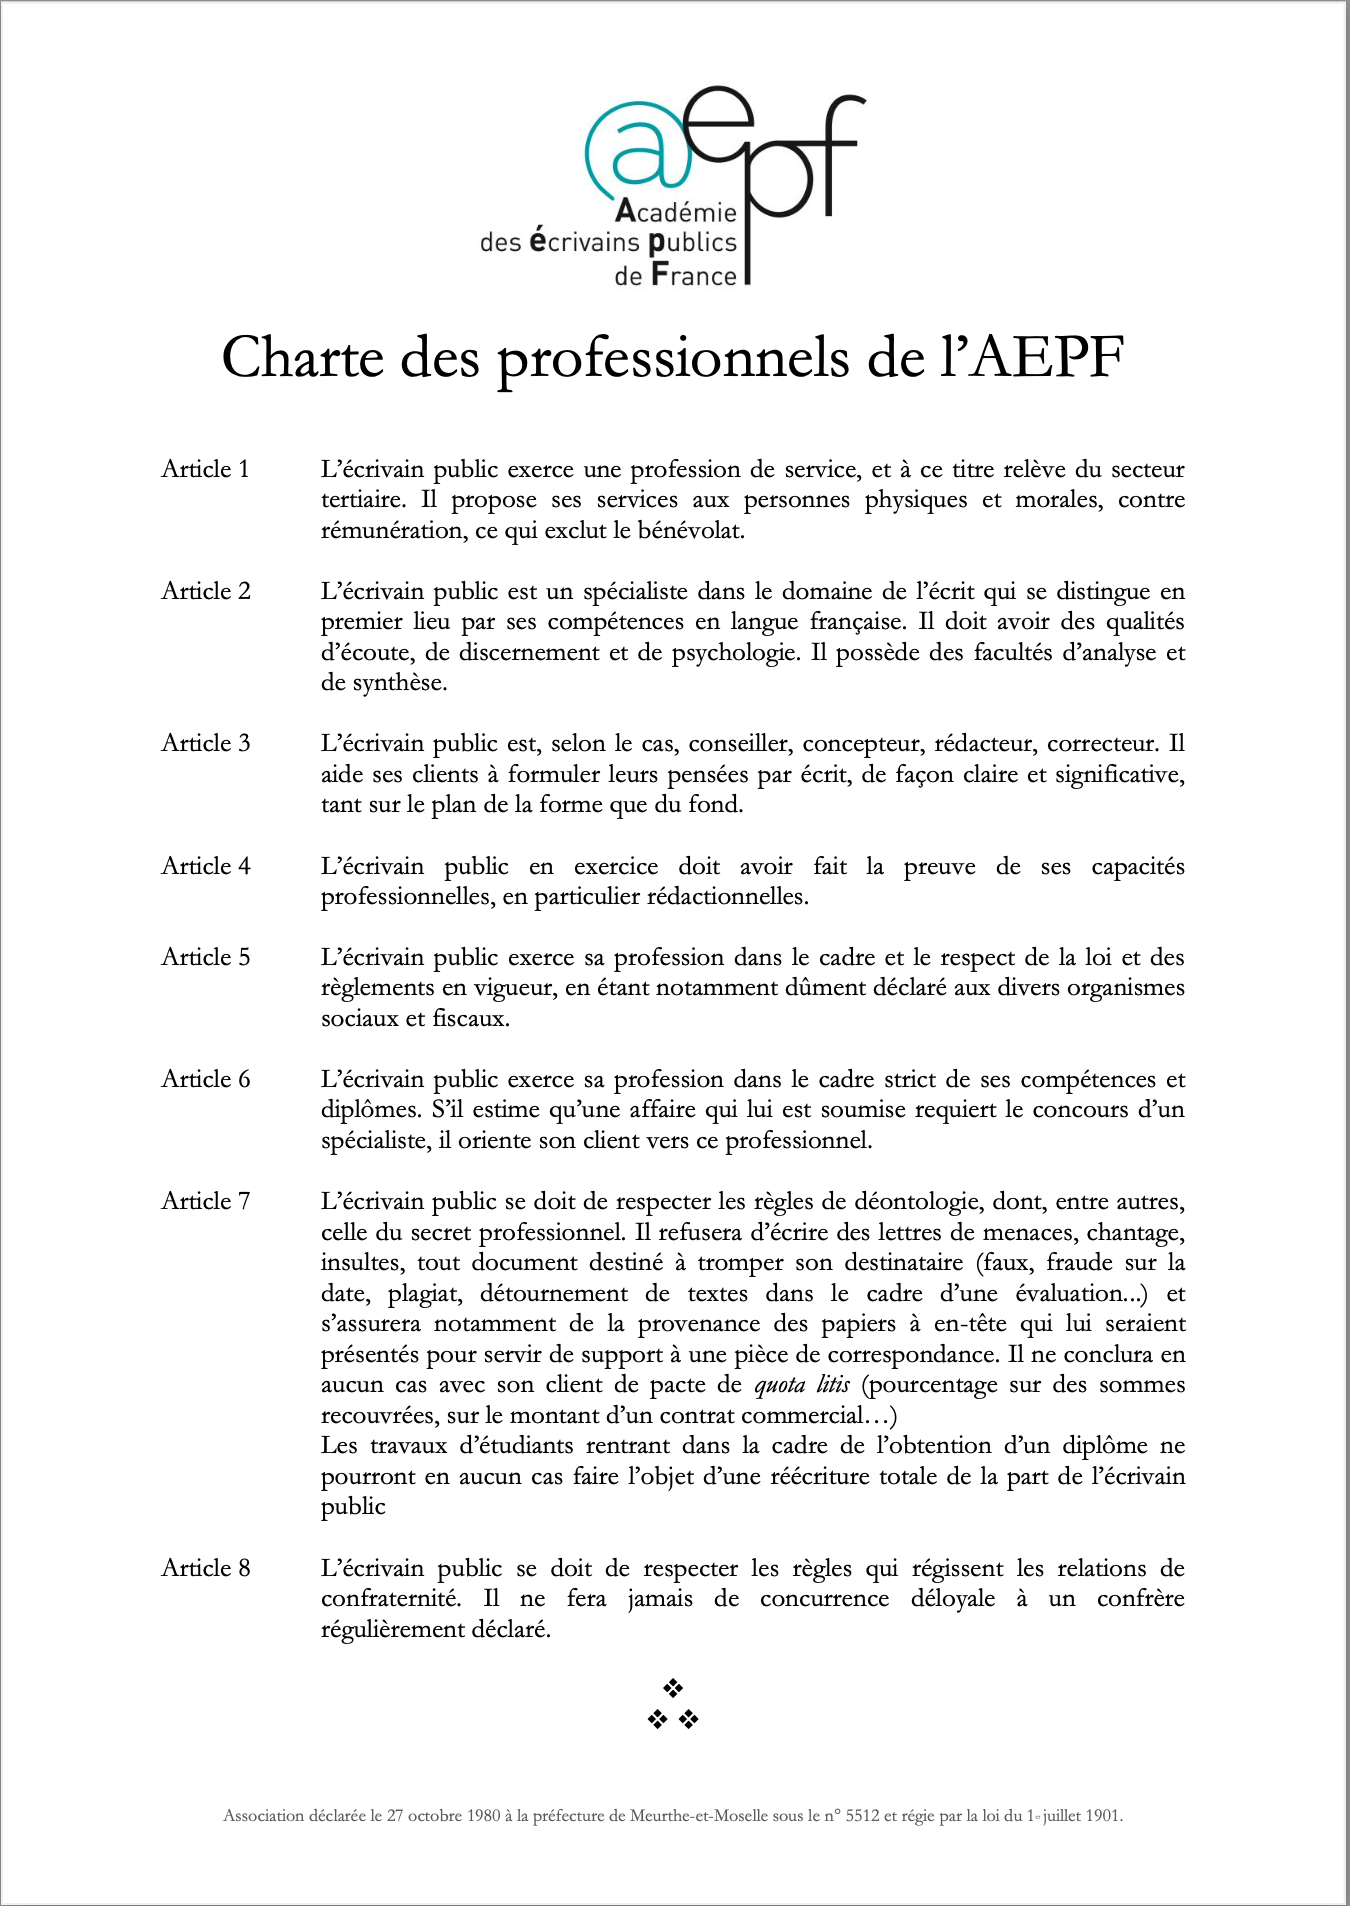 Charte des professionnels de l’AEPF